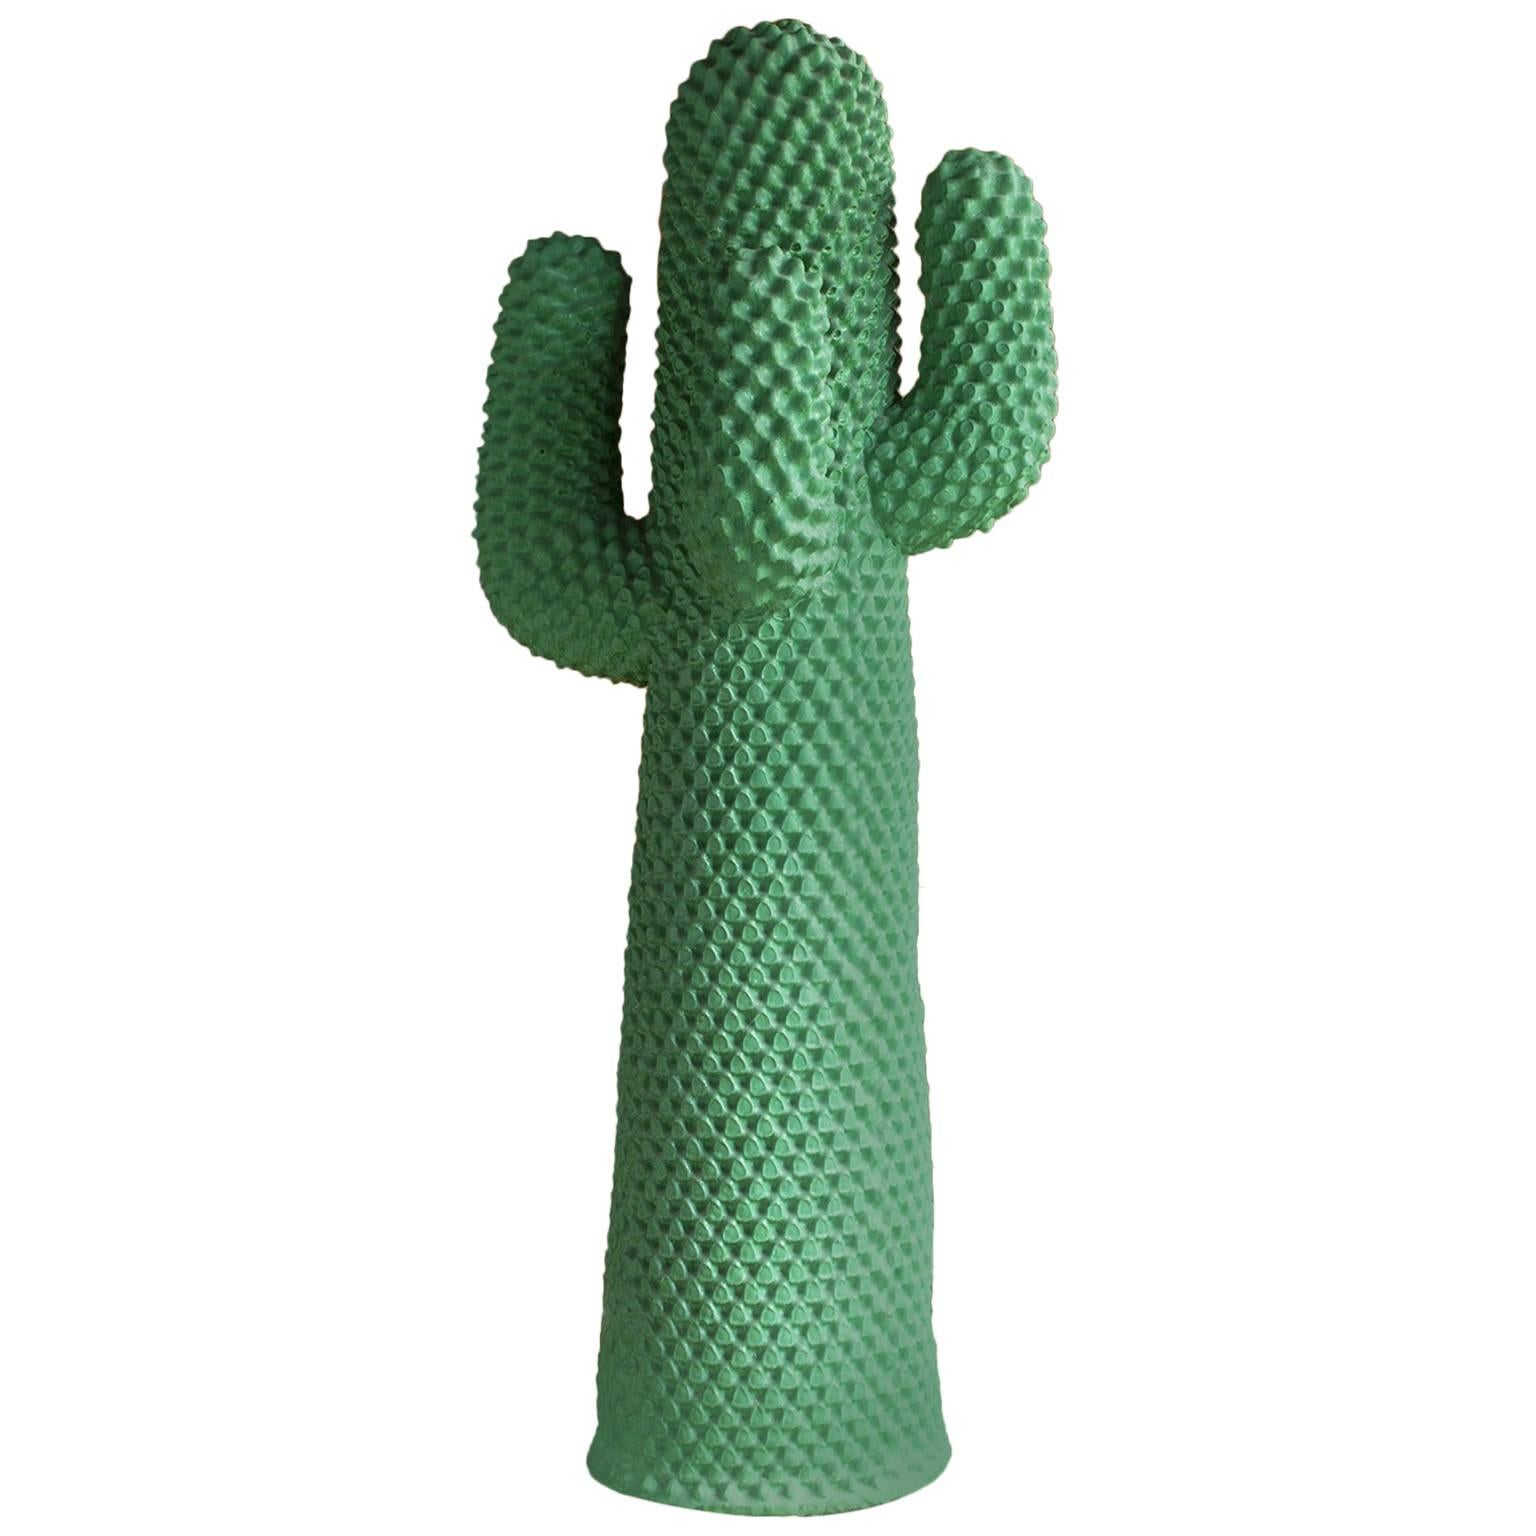 1972, Guido Drocco et Franco Mello, Manteau Cactus, dans le meilleur vert de tous les temps